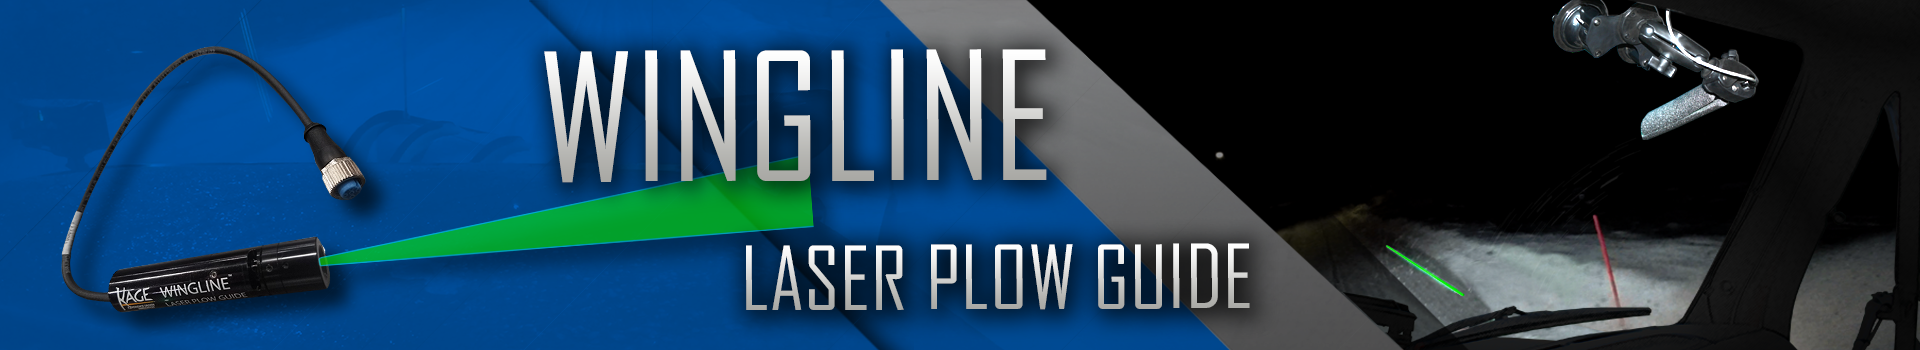 WingLine Laser Plow Guide